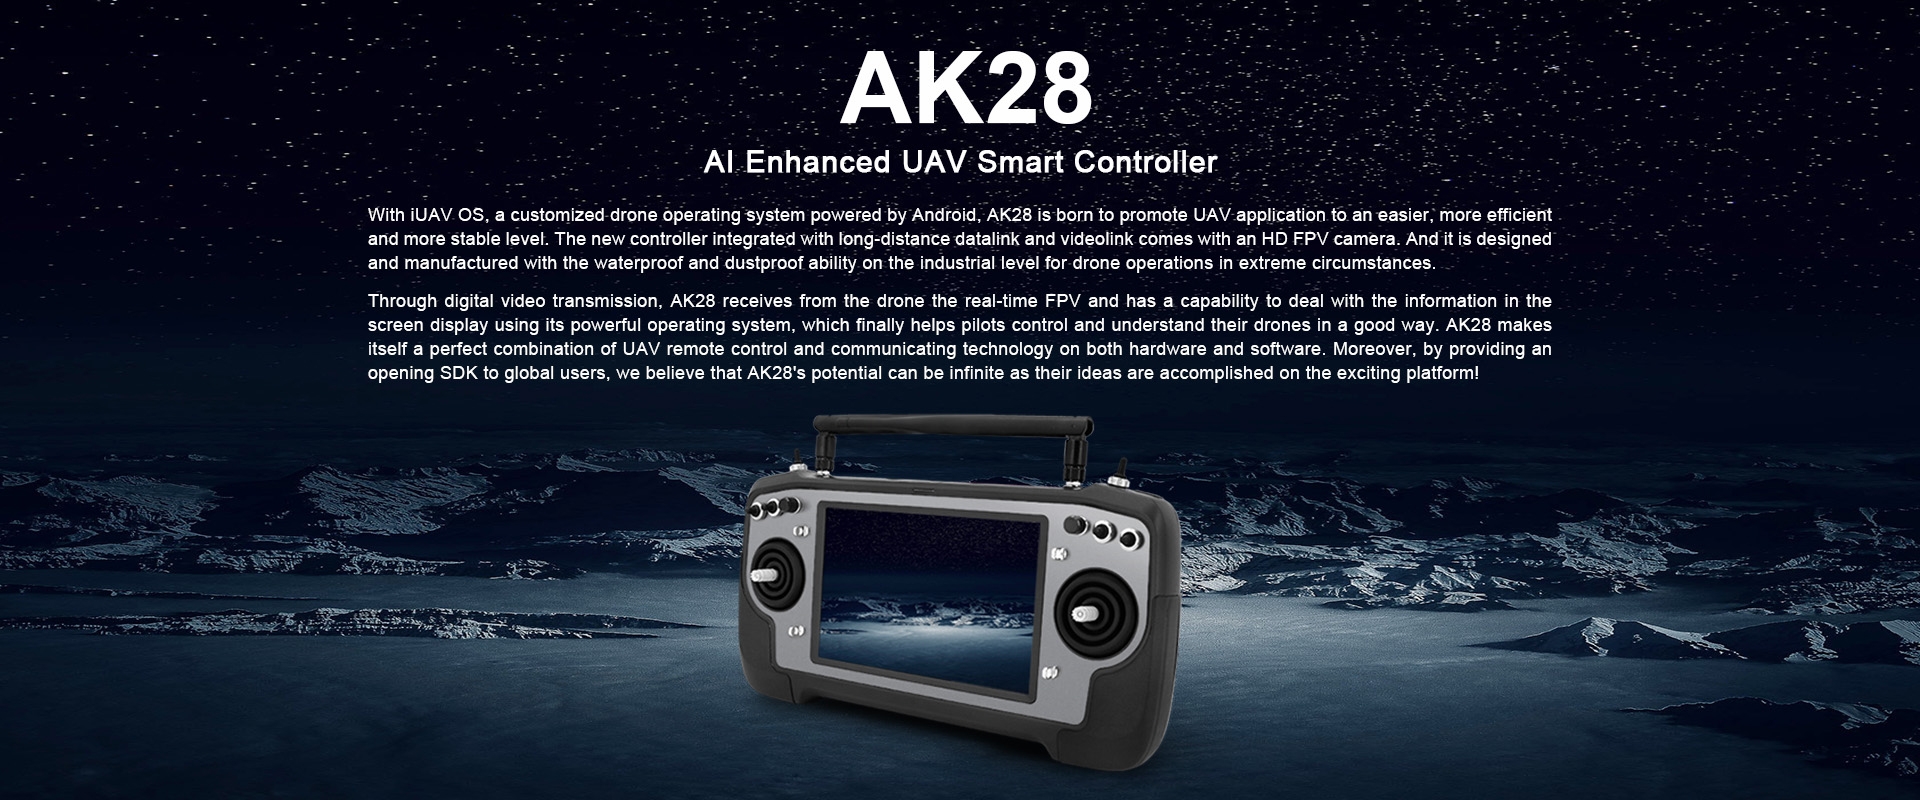 SIYI AK28 2.4GHz 14CH Smart Transmitter AI Enhanced UAV Smart Controller Support Radiolink Datalink Videolink for RC Drone